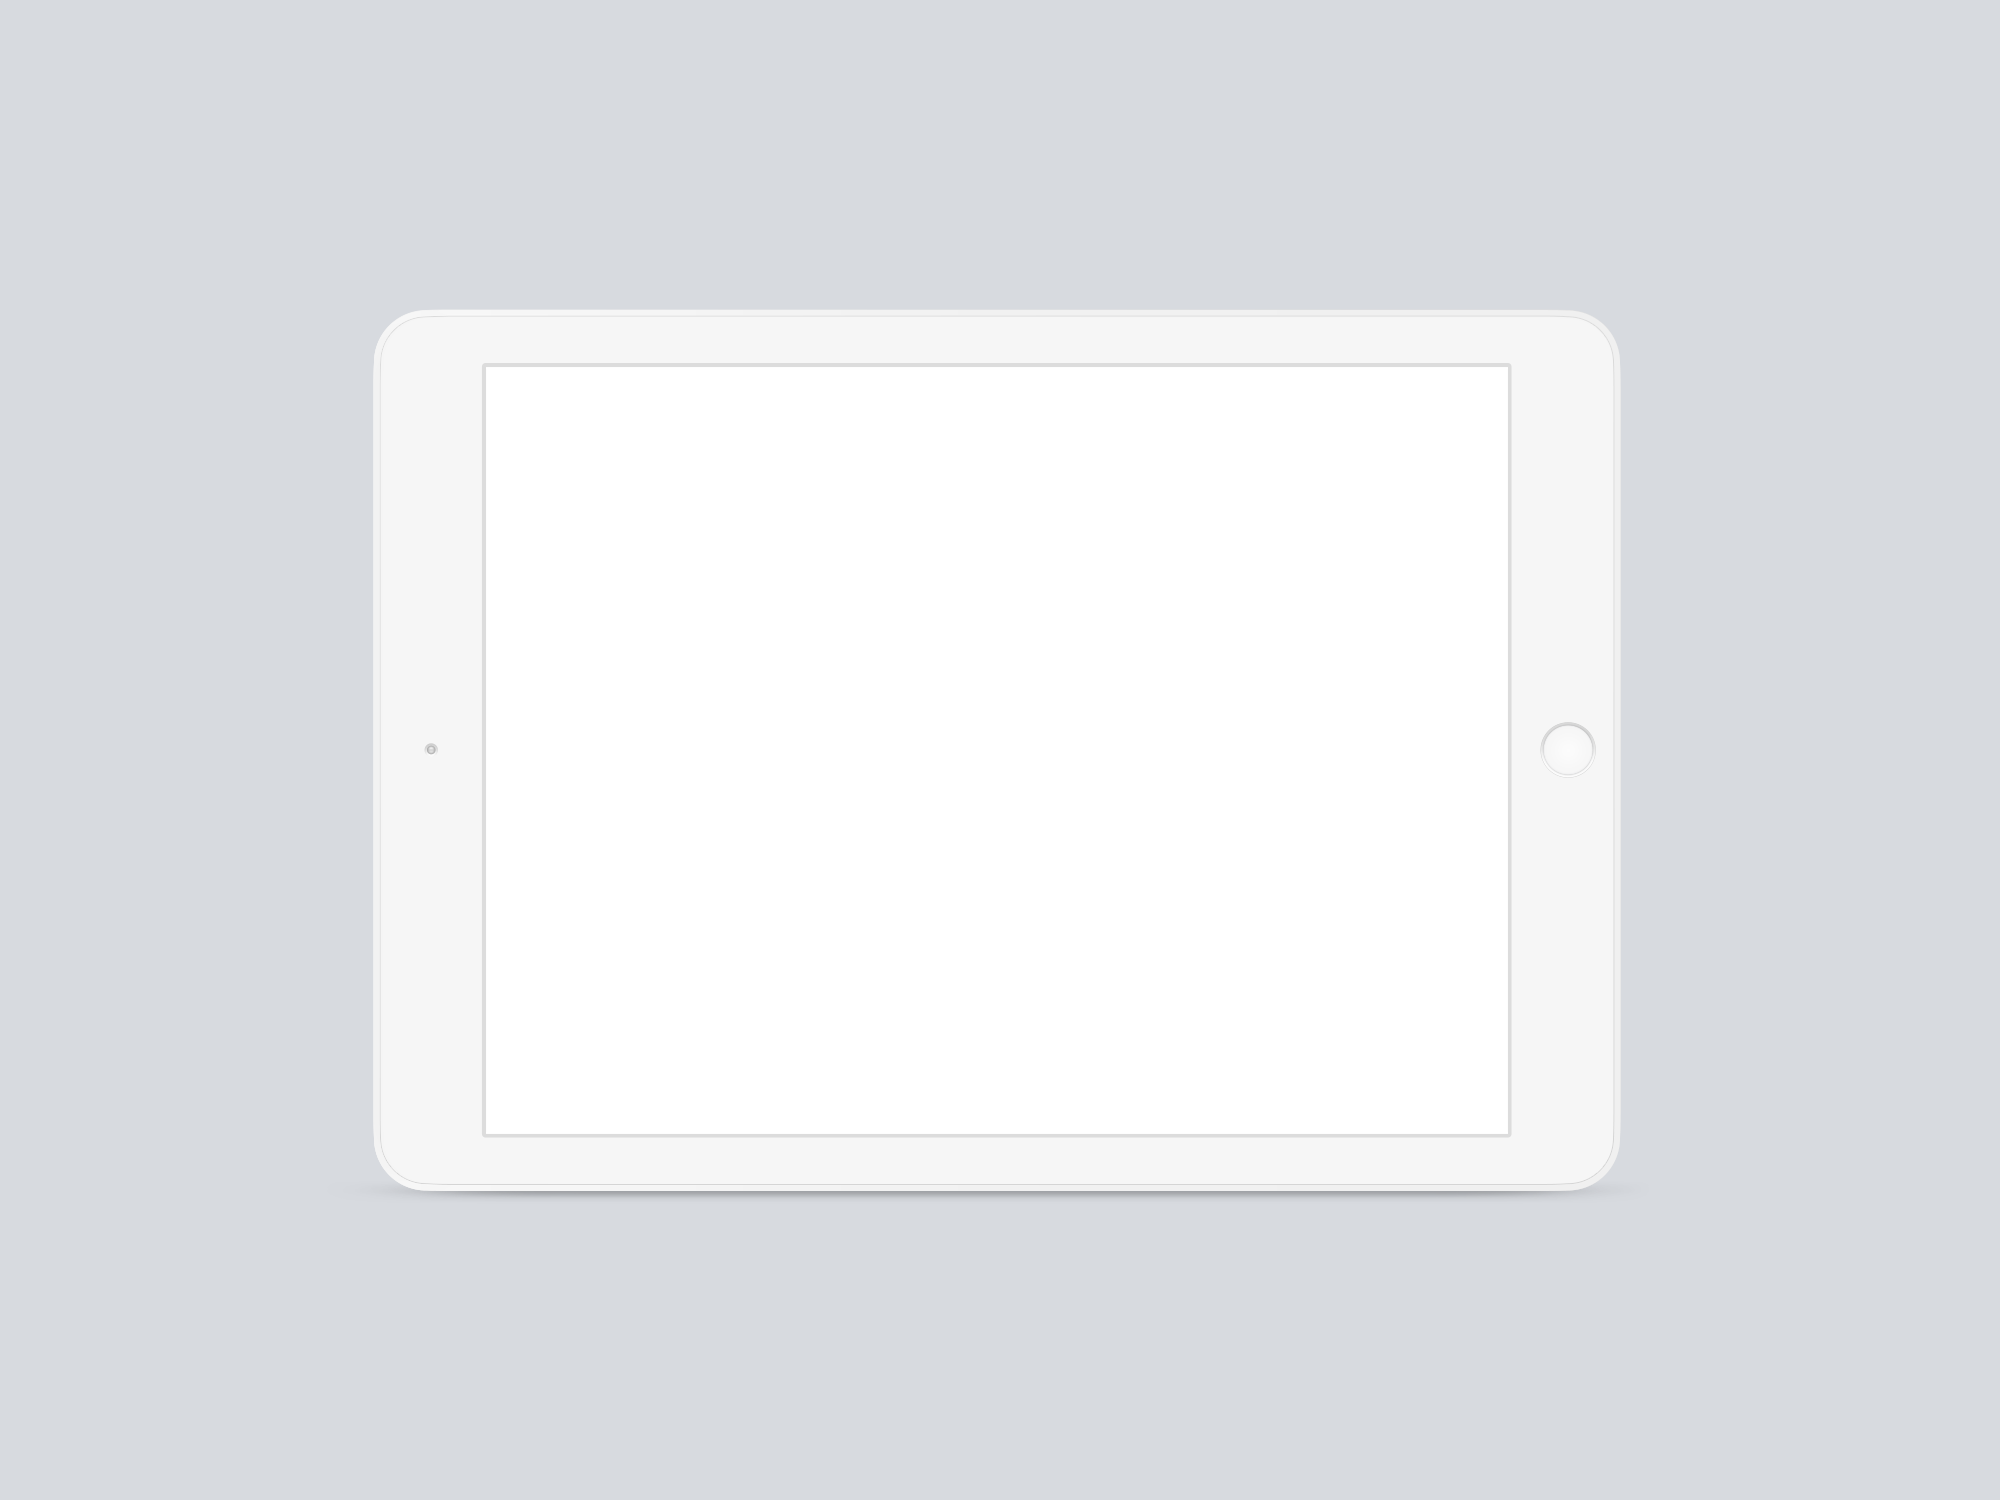 Download iPad Clay Frontal Mockup | The Mockup Club PSD Mockup Templates